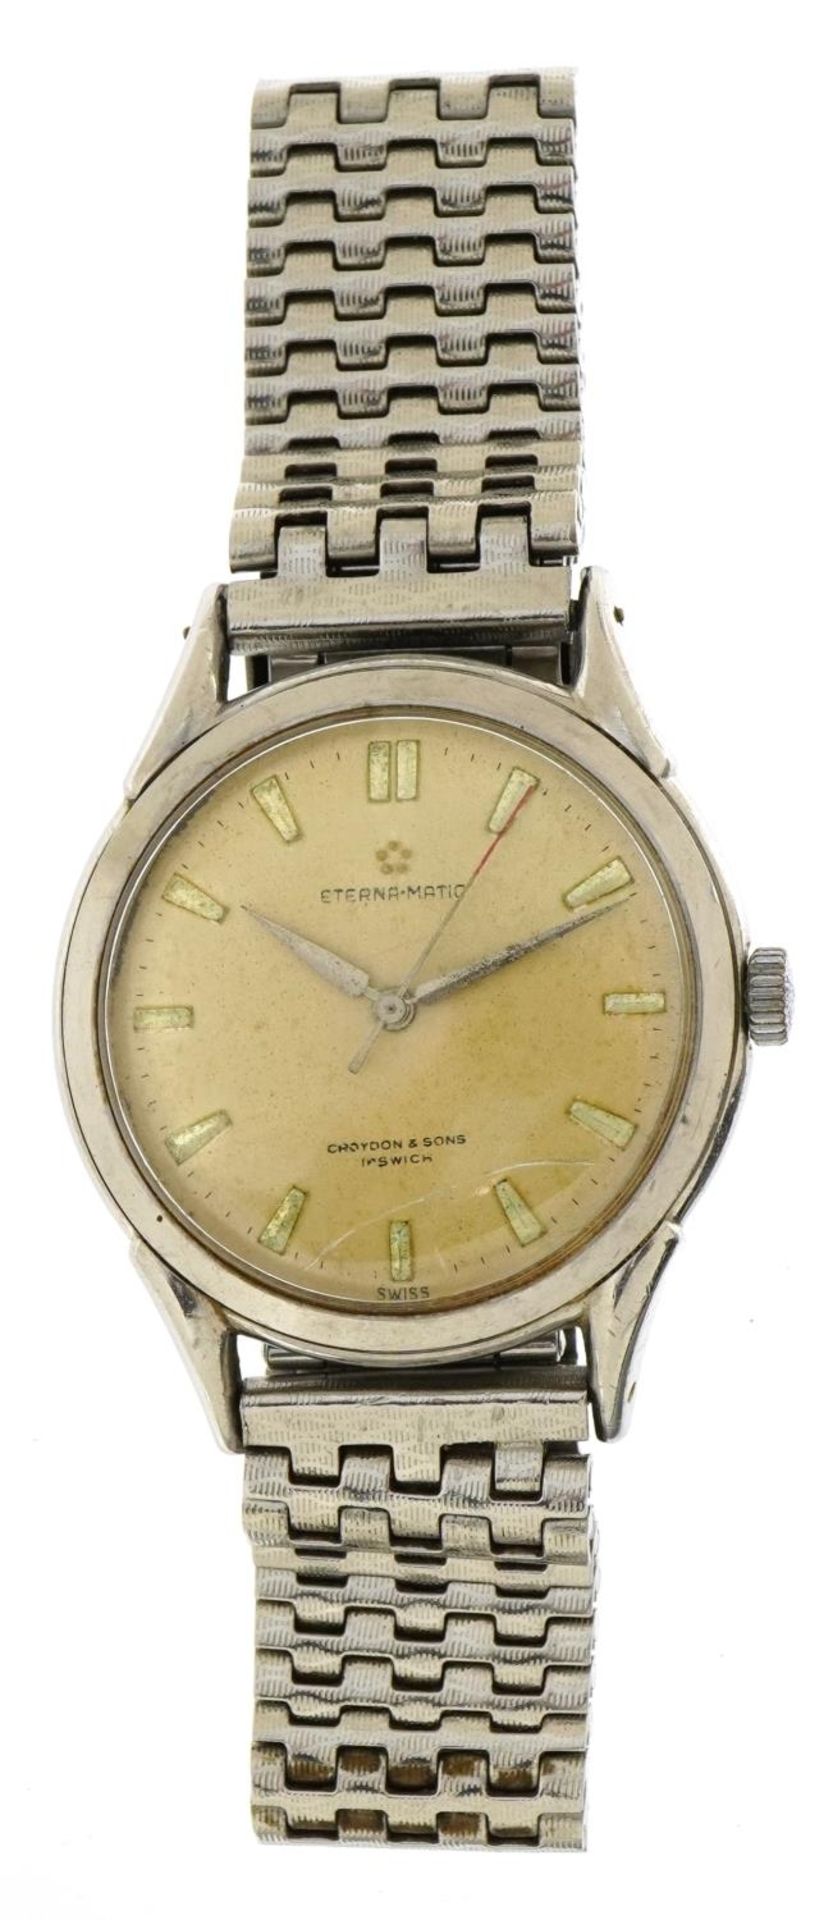 Gentlemen's Eterna Matic gentleman's automatic wristwatch, the case 36mm in diameter - Image 2 of 4